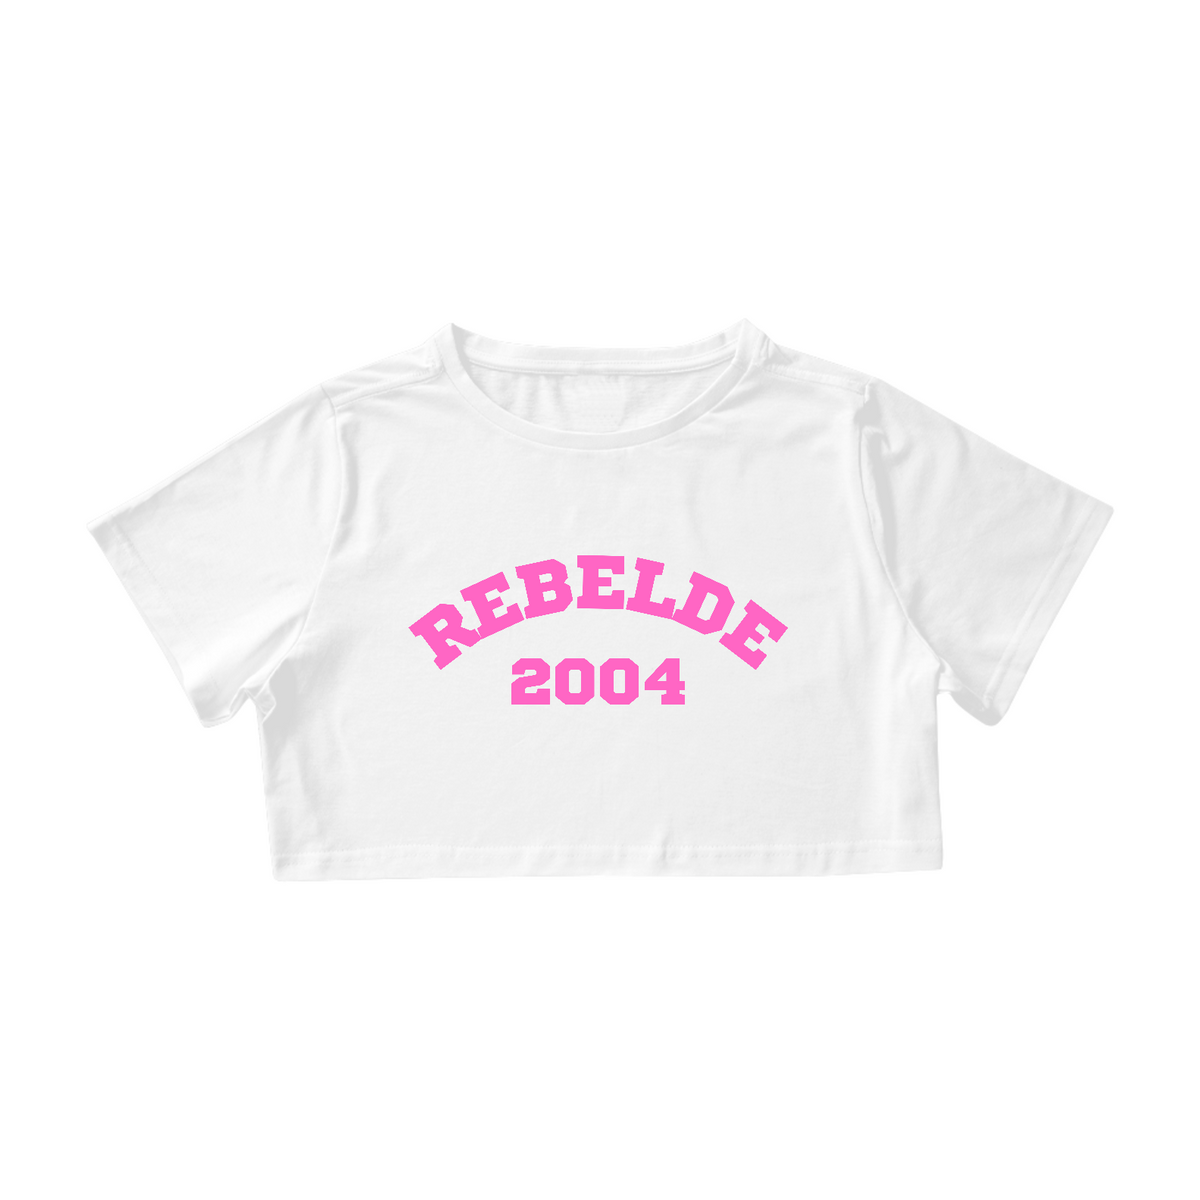 Nome do produto: Cropped - Rebelde 2004 ®